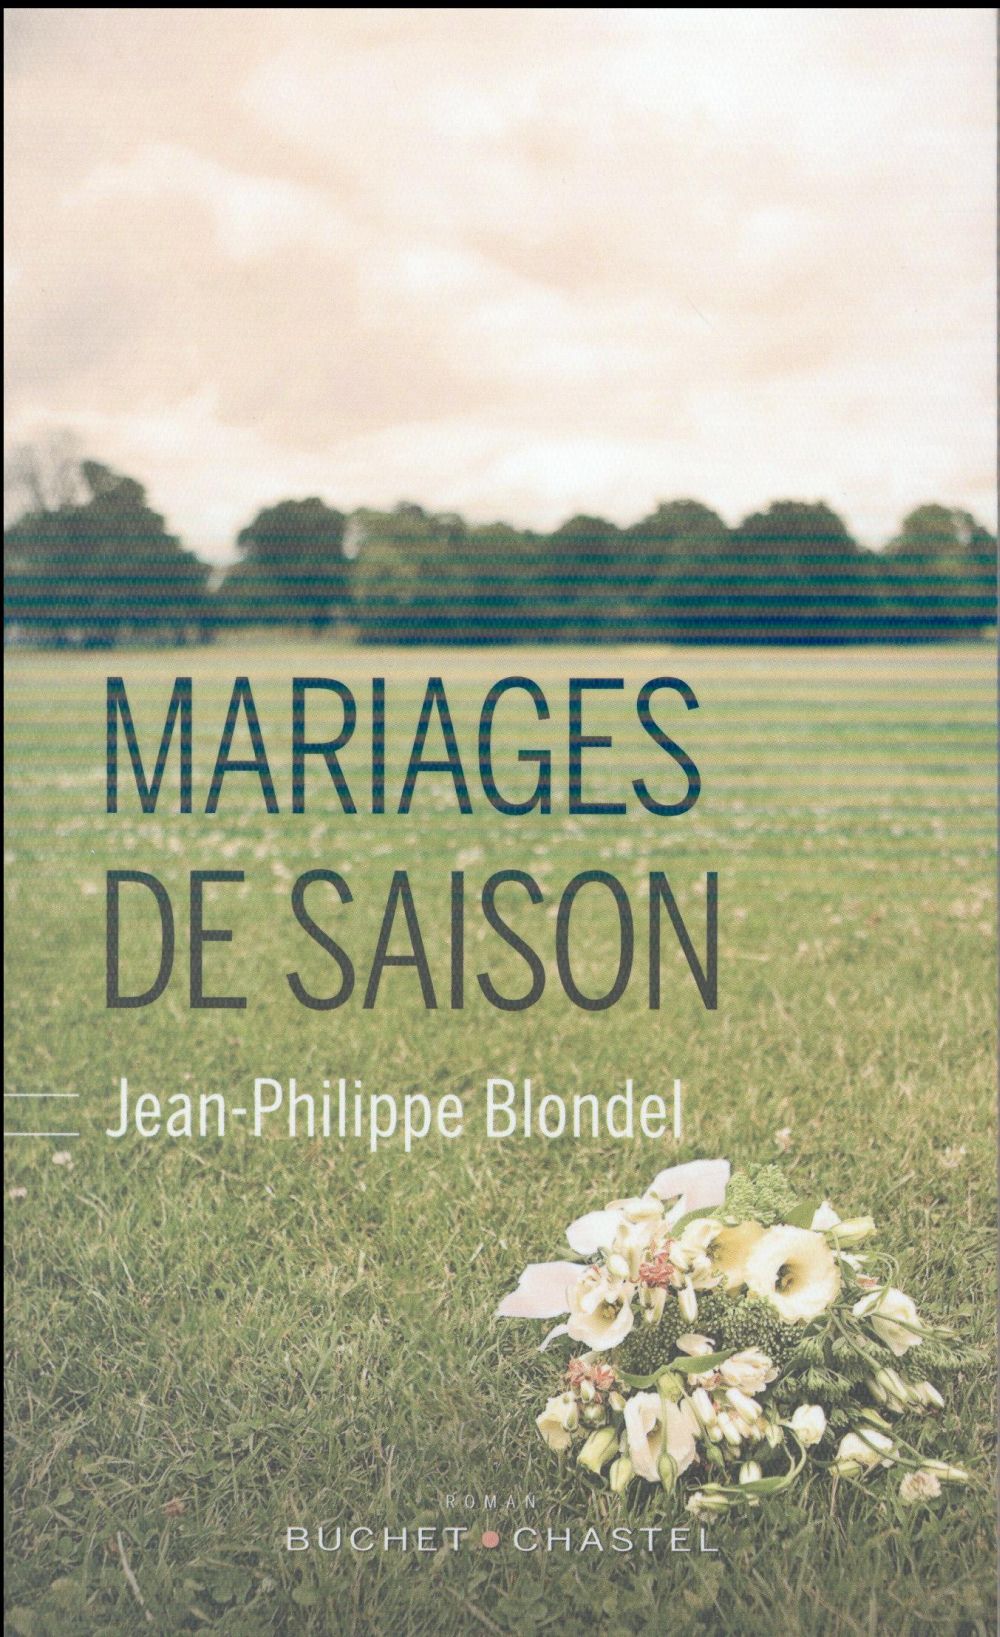 Quand Jean-Philippe Blondel vient évoquer ses "Mariages de saison"